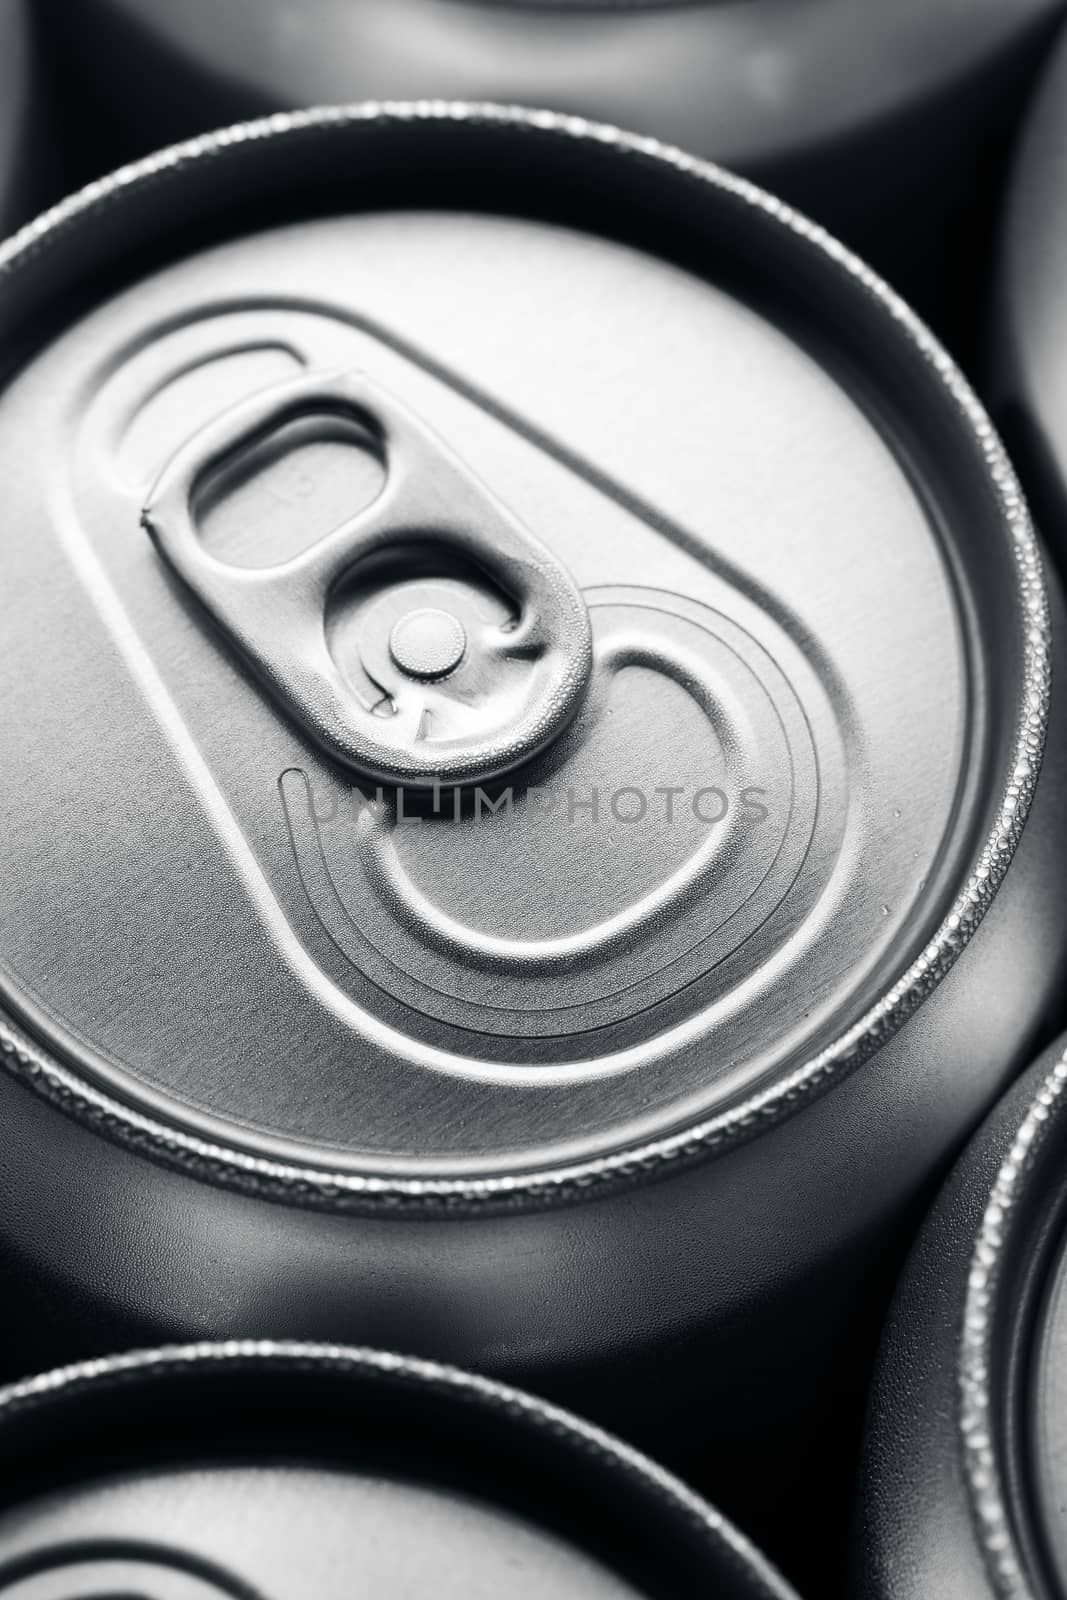 Plain Aluminum Beverage Cans